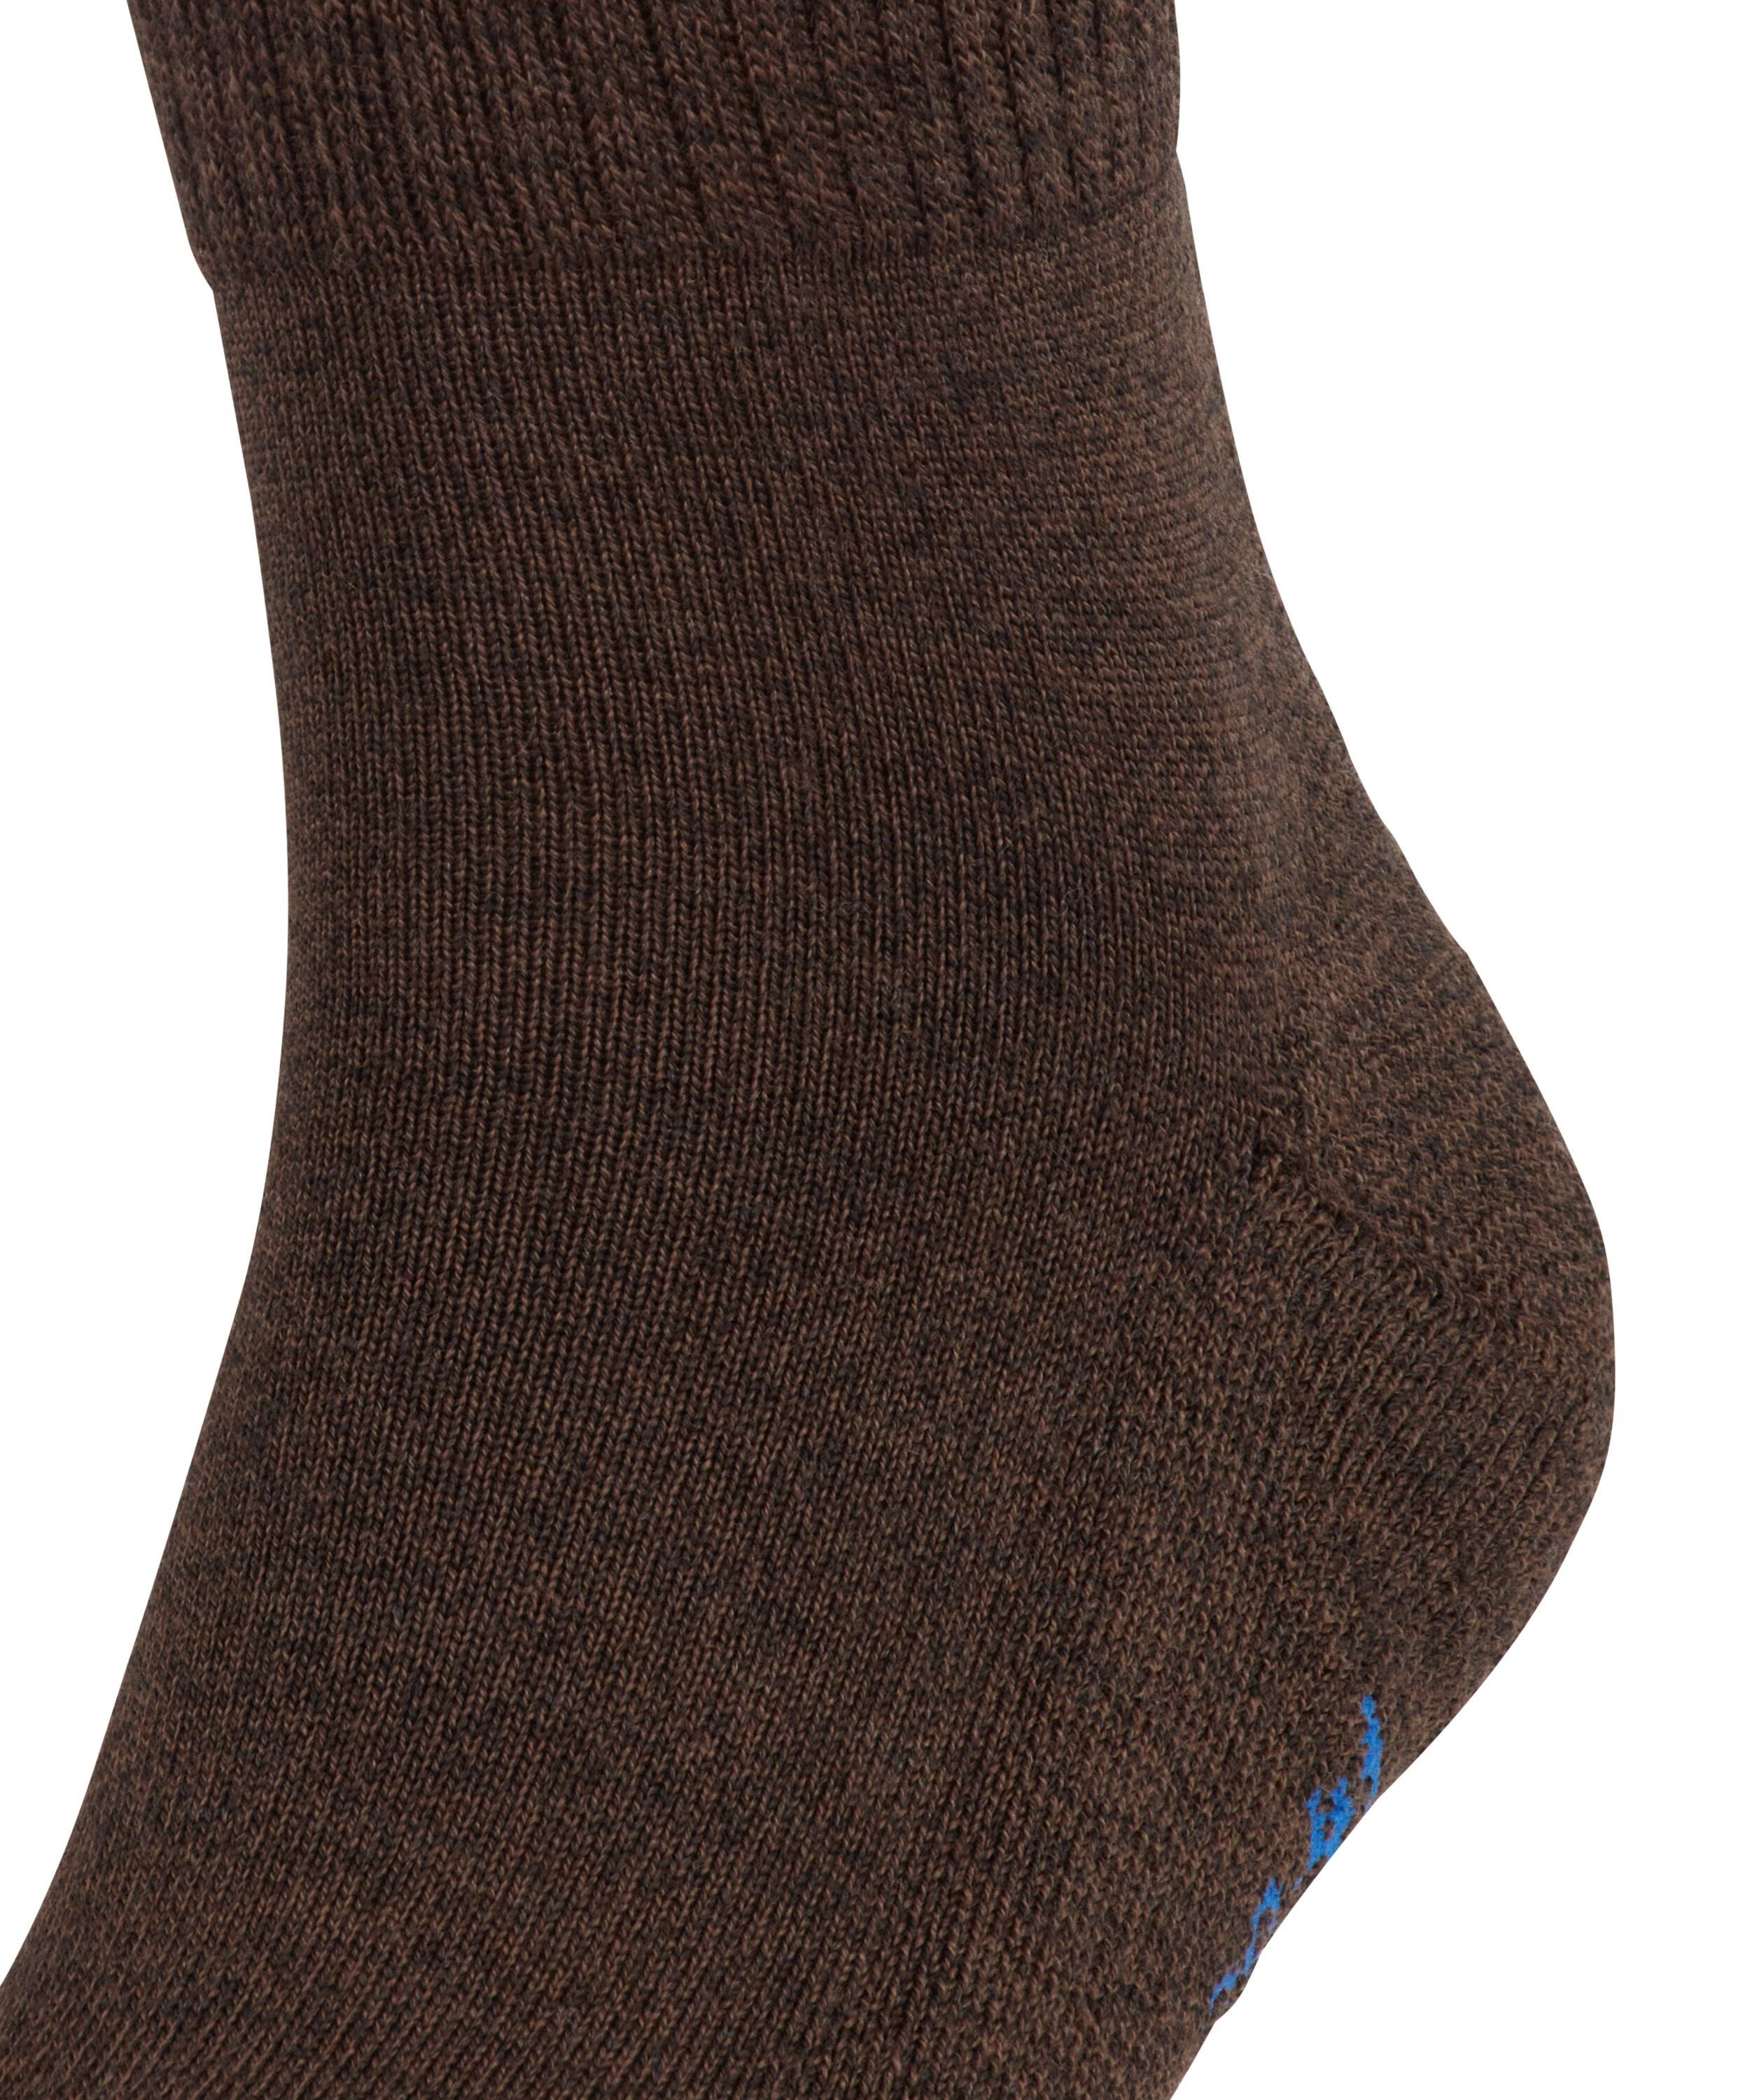 dark Socken Walkie brown (5450) Light FALKE (1-Paar)